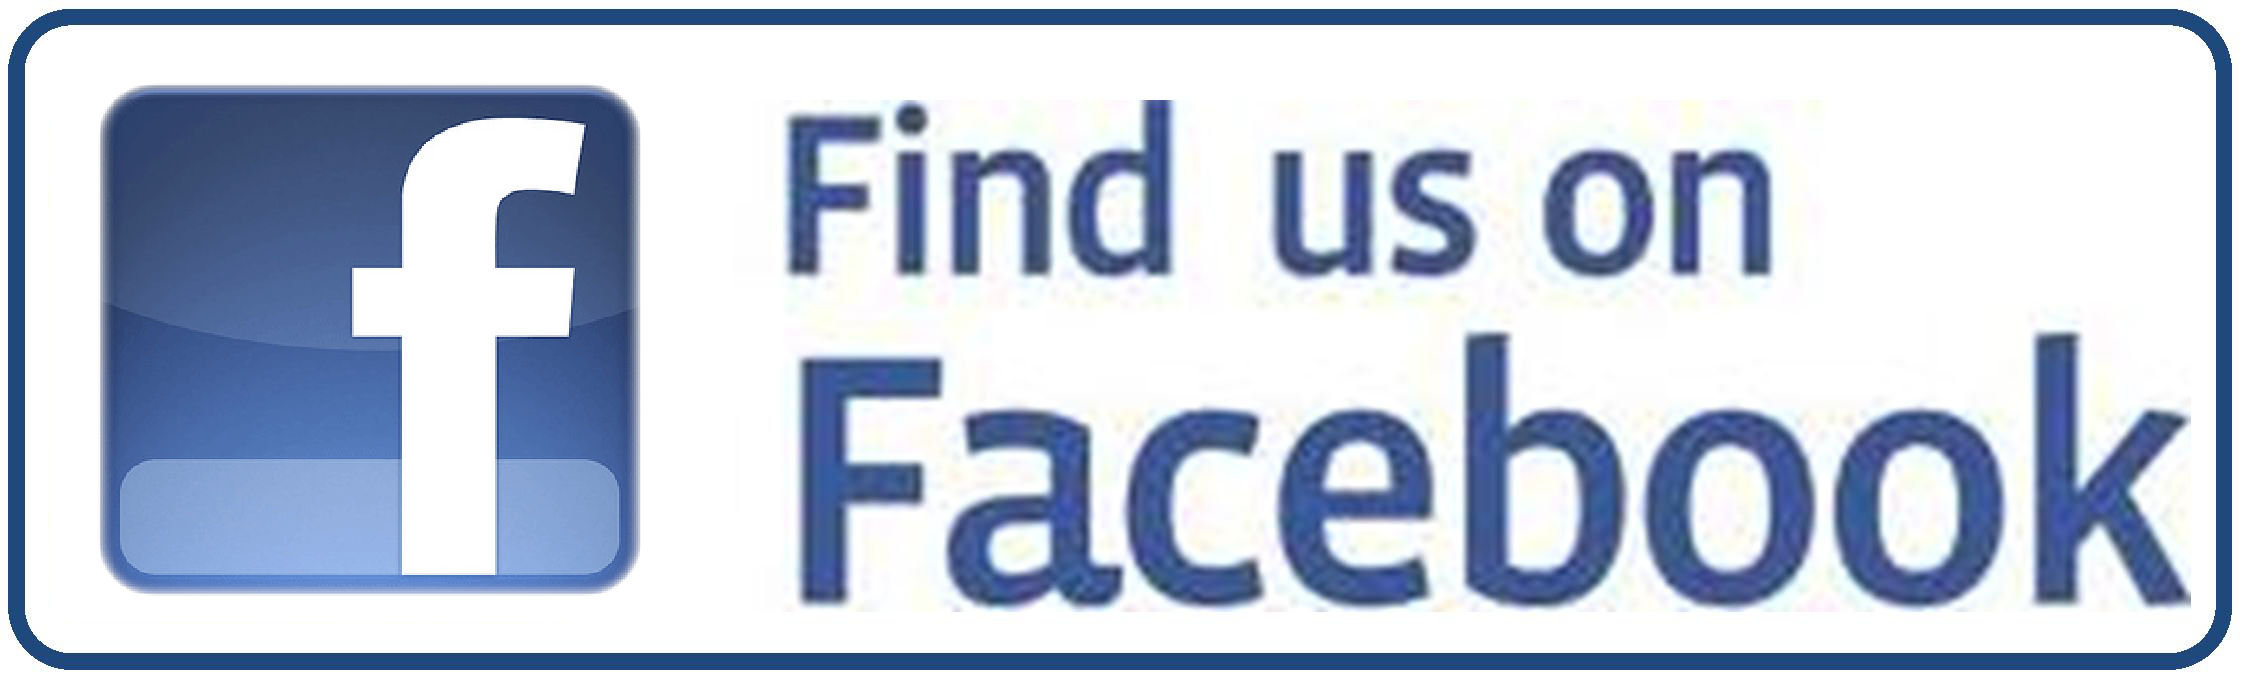 Find us on facebook logo